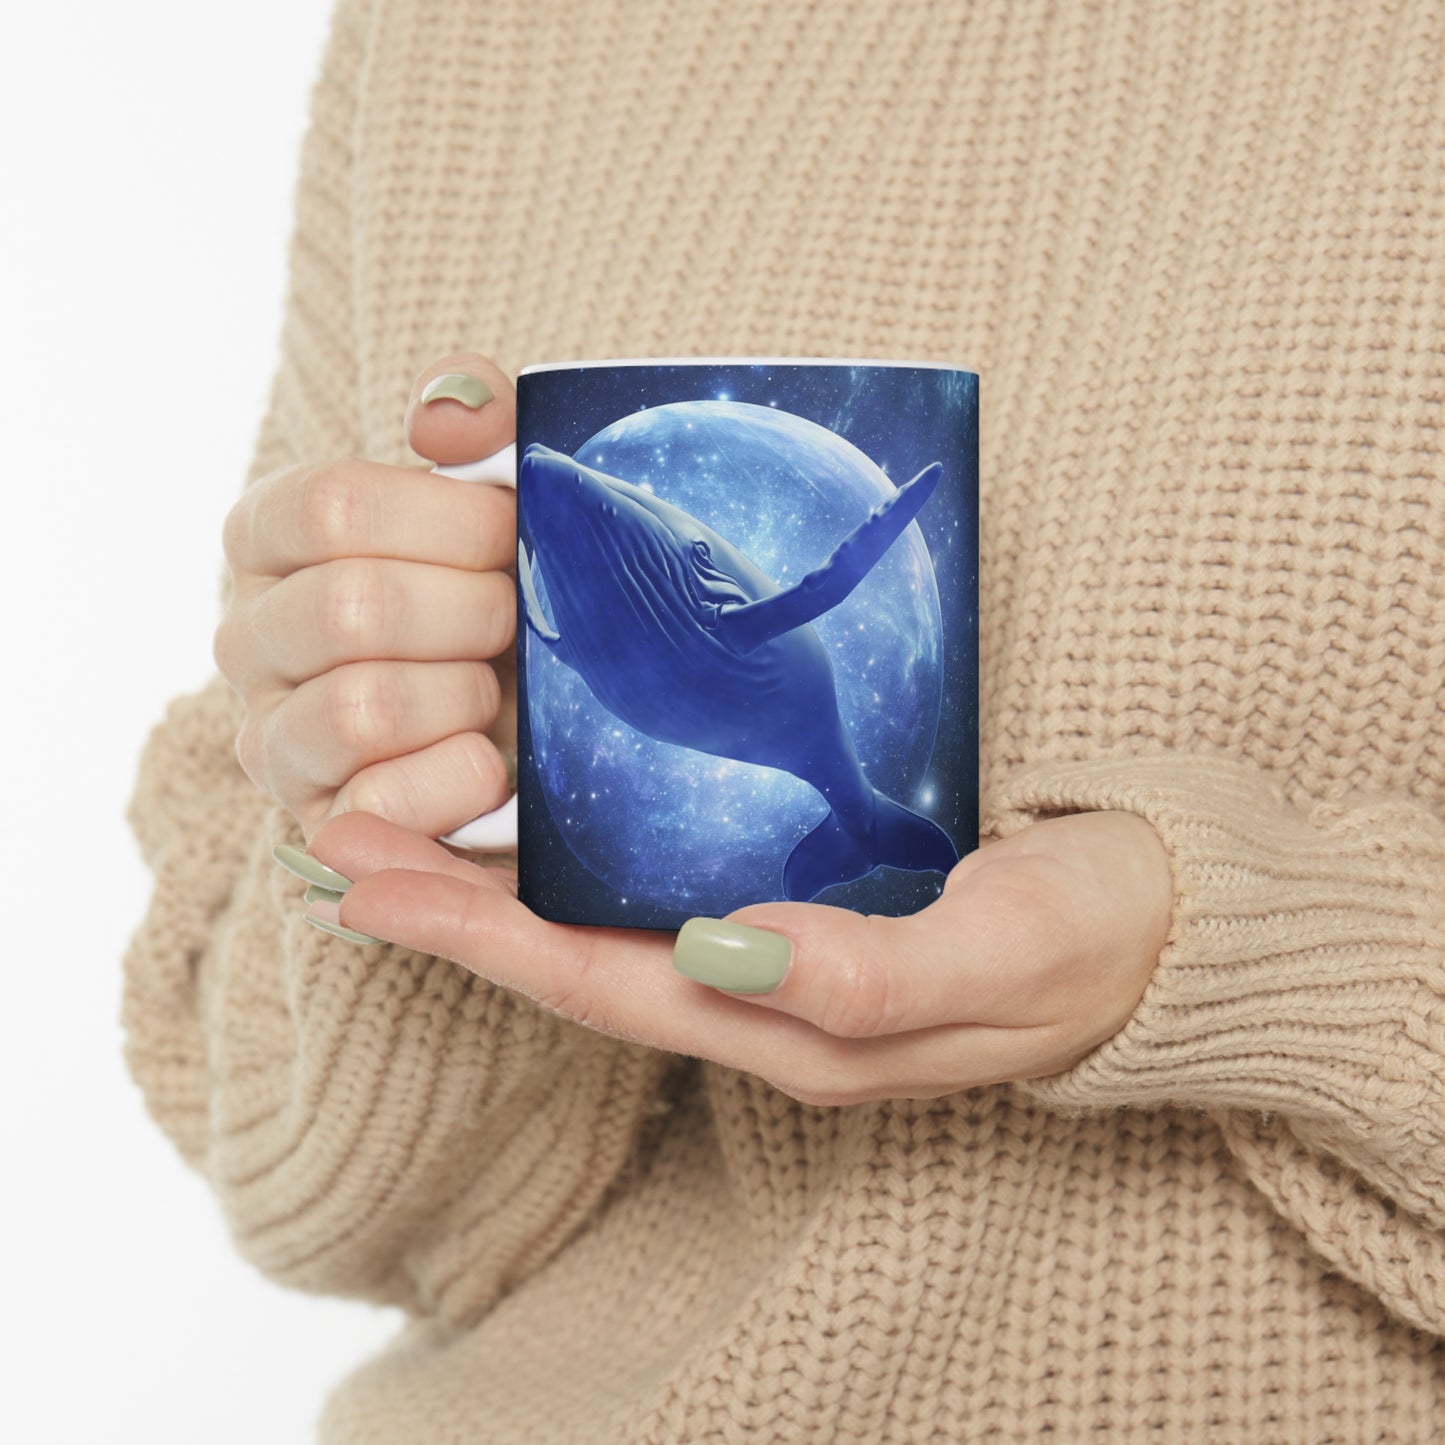 Blue whale dream - Ceramic Mug 11oz